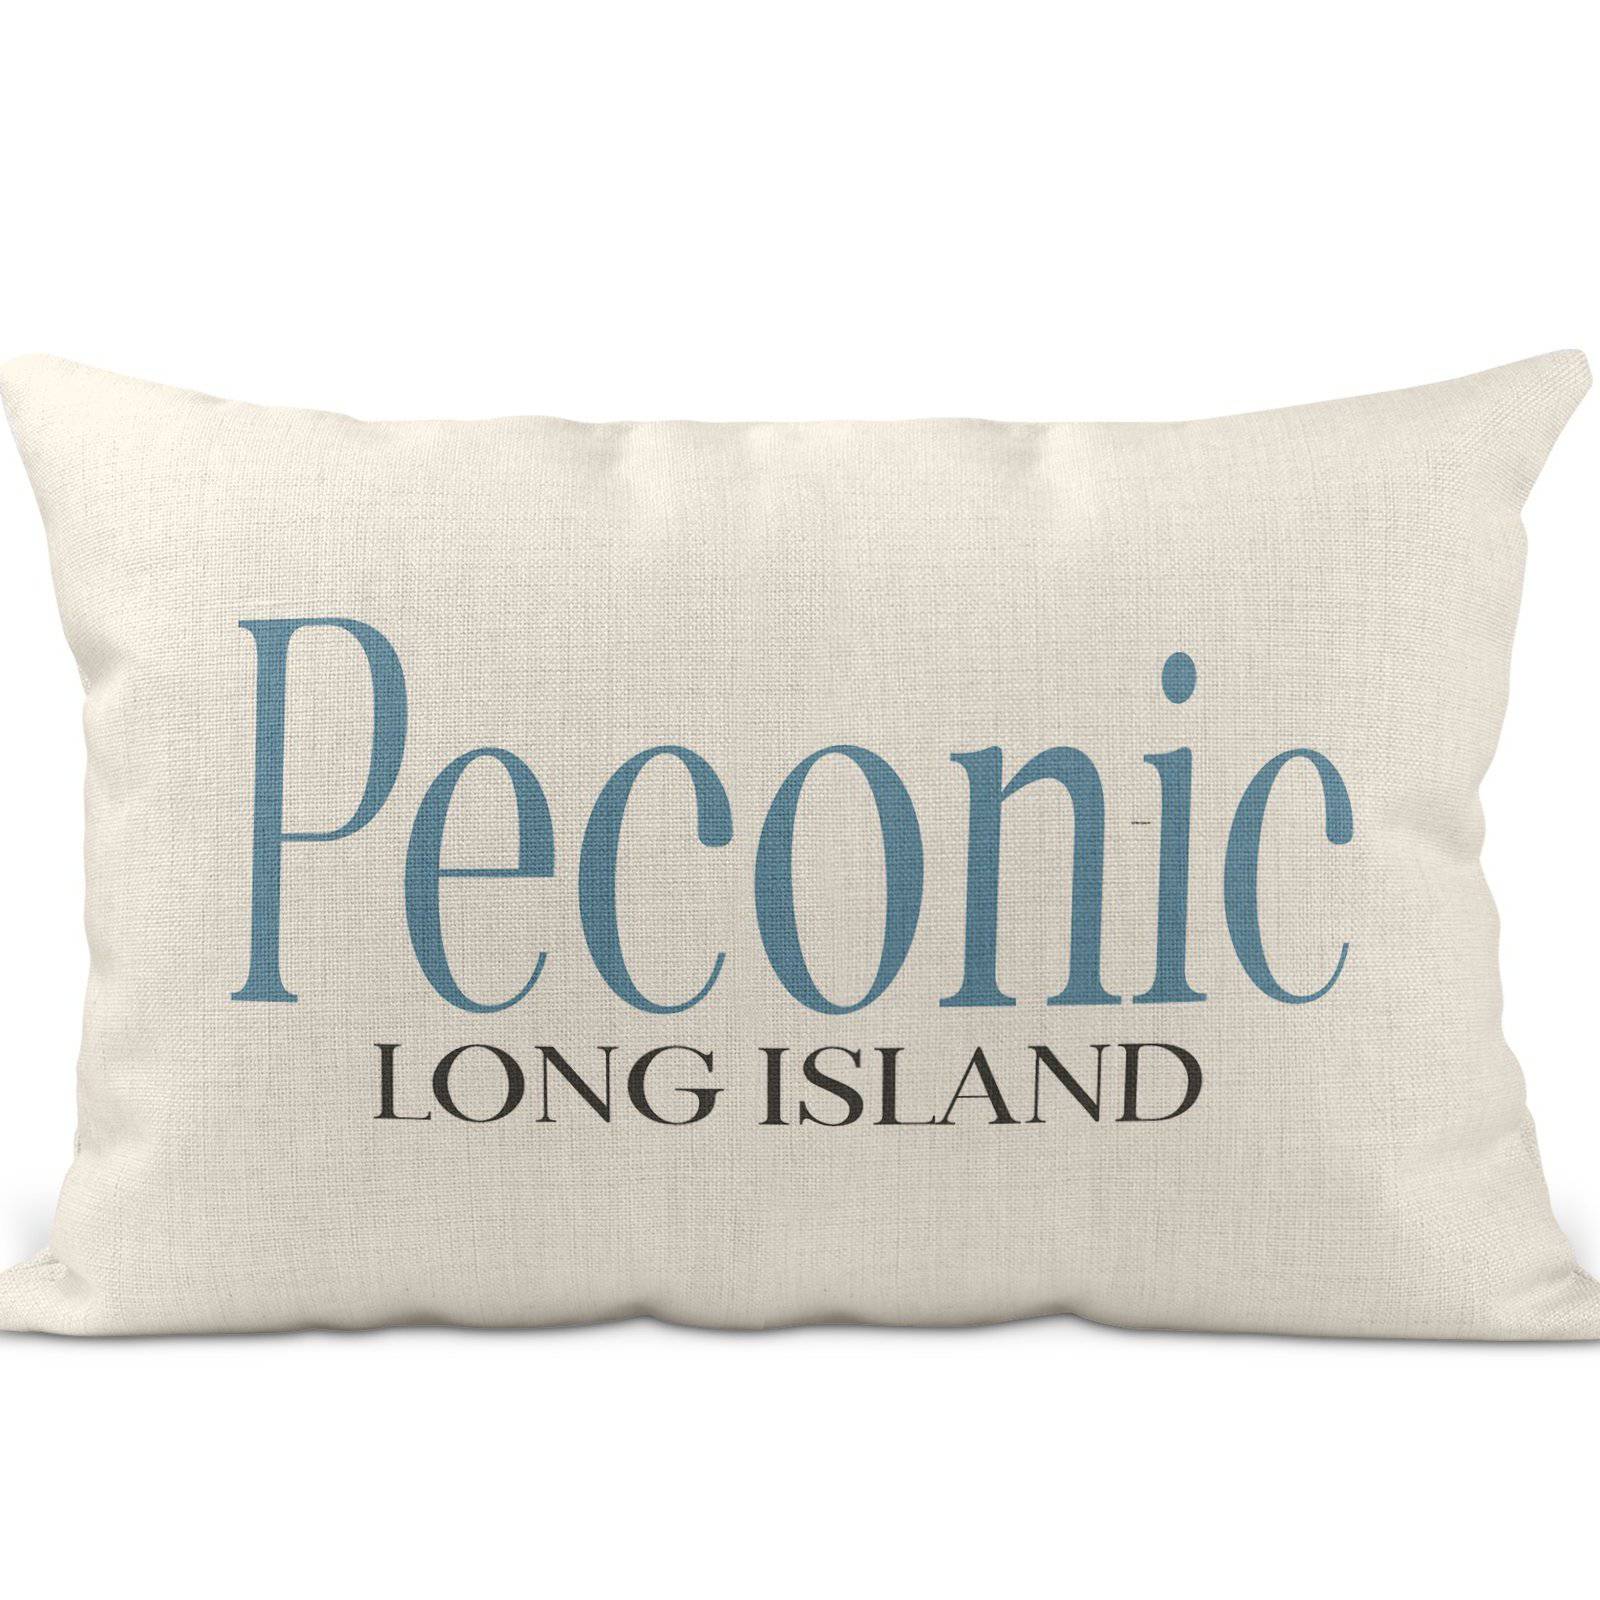 Peconic Pillow - Peconic Long Island, North Fork, lumbar pillow